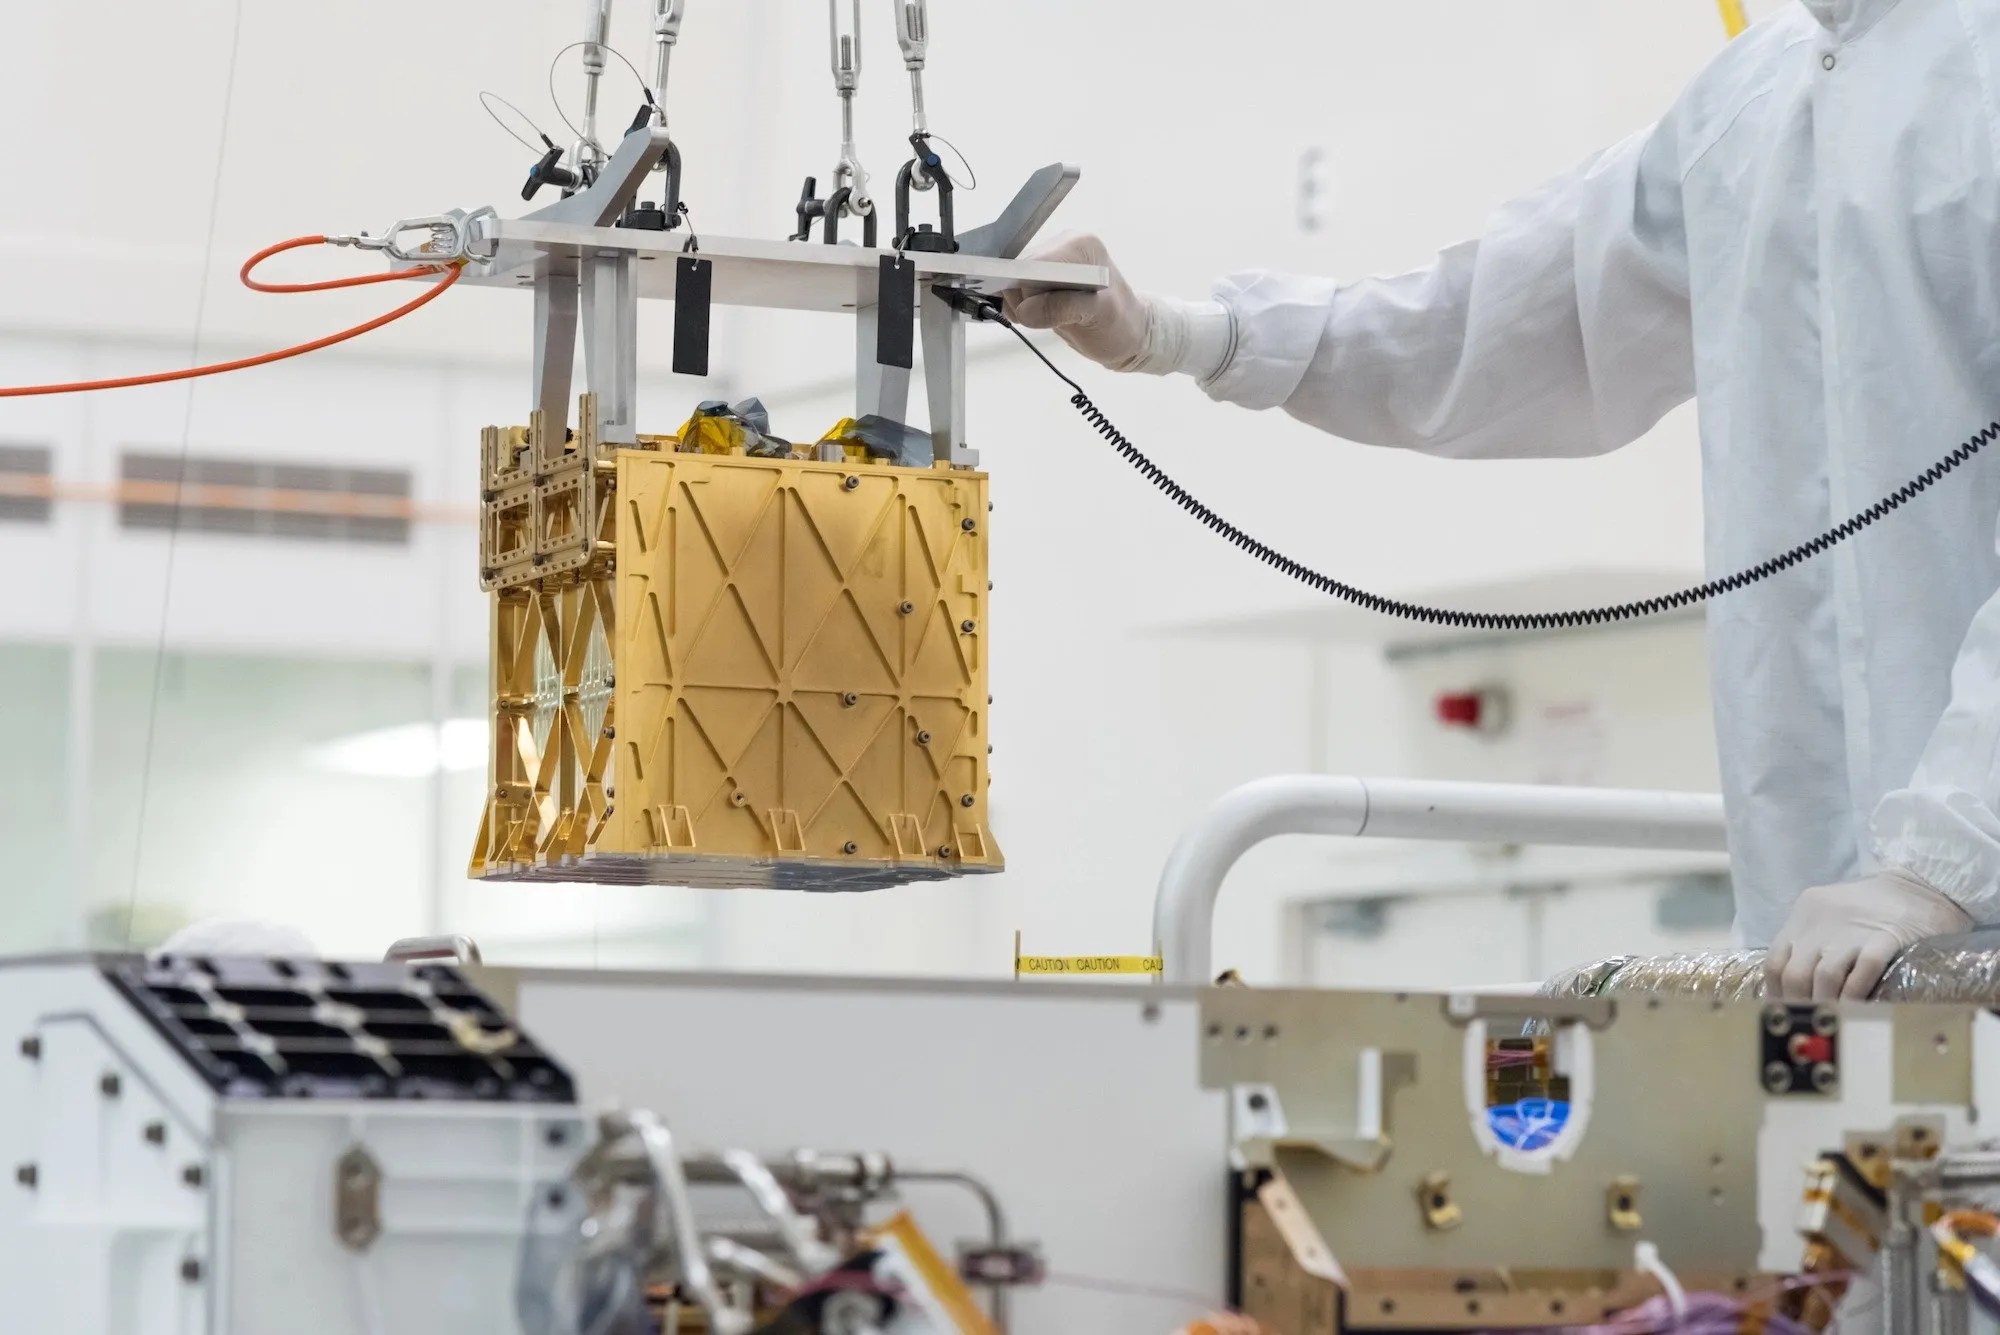 Los técnicos en la sala limpia bajan con cuidado el instrumento del Experimento de utilización de recursos in situ de oxígeno de Marte (MOXIE, por sus siglas en inglés) al vientre del Rover Perseverance.